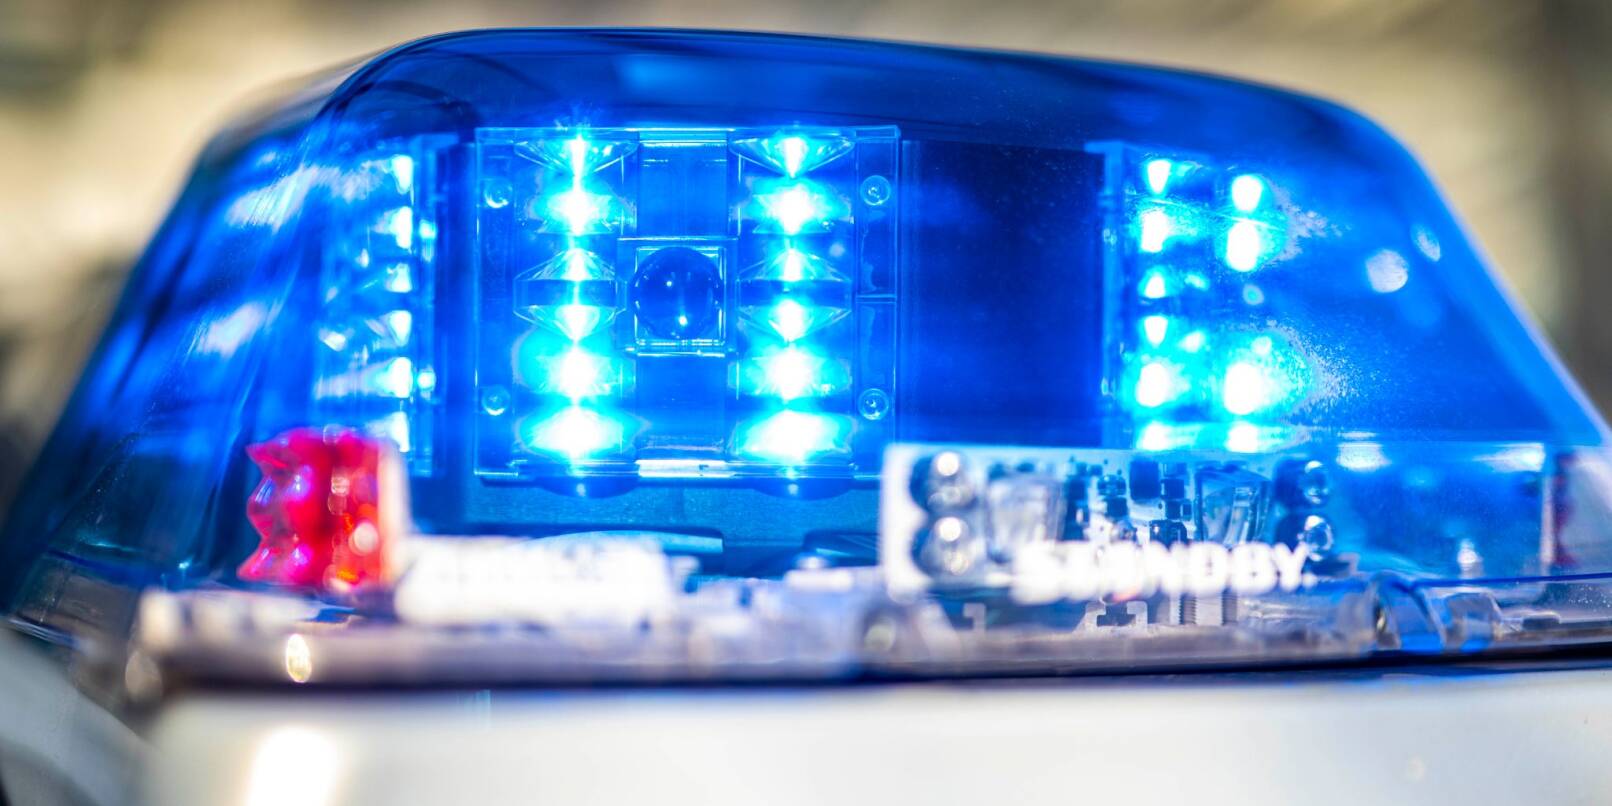 Ein Blaulicht leuchtet auf dem Dach eines Polizeiwagens.